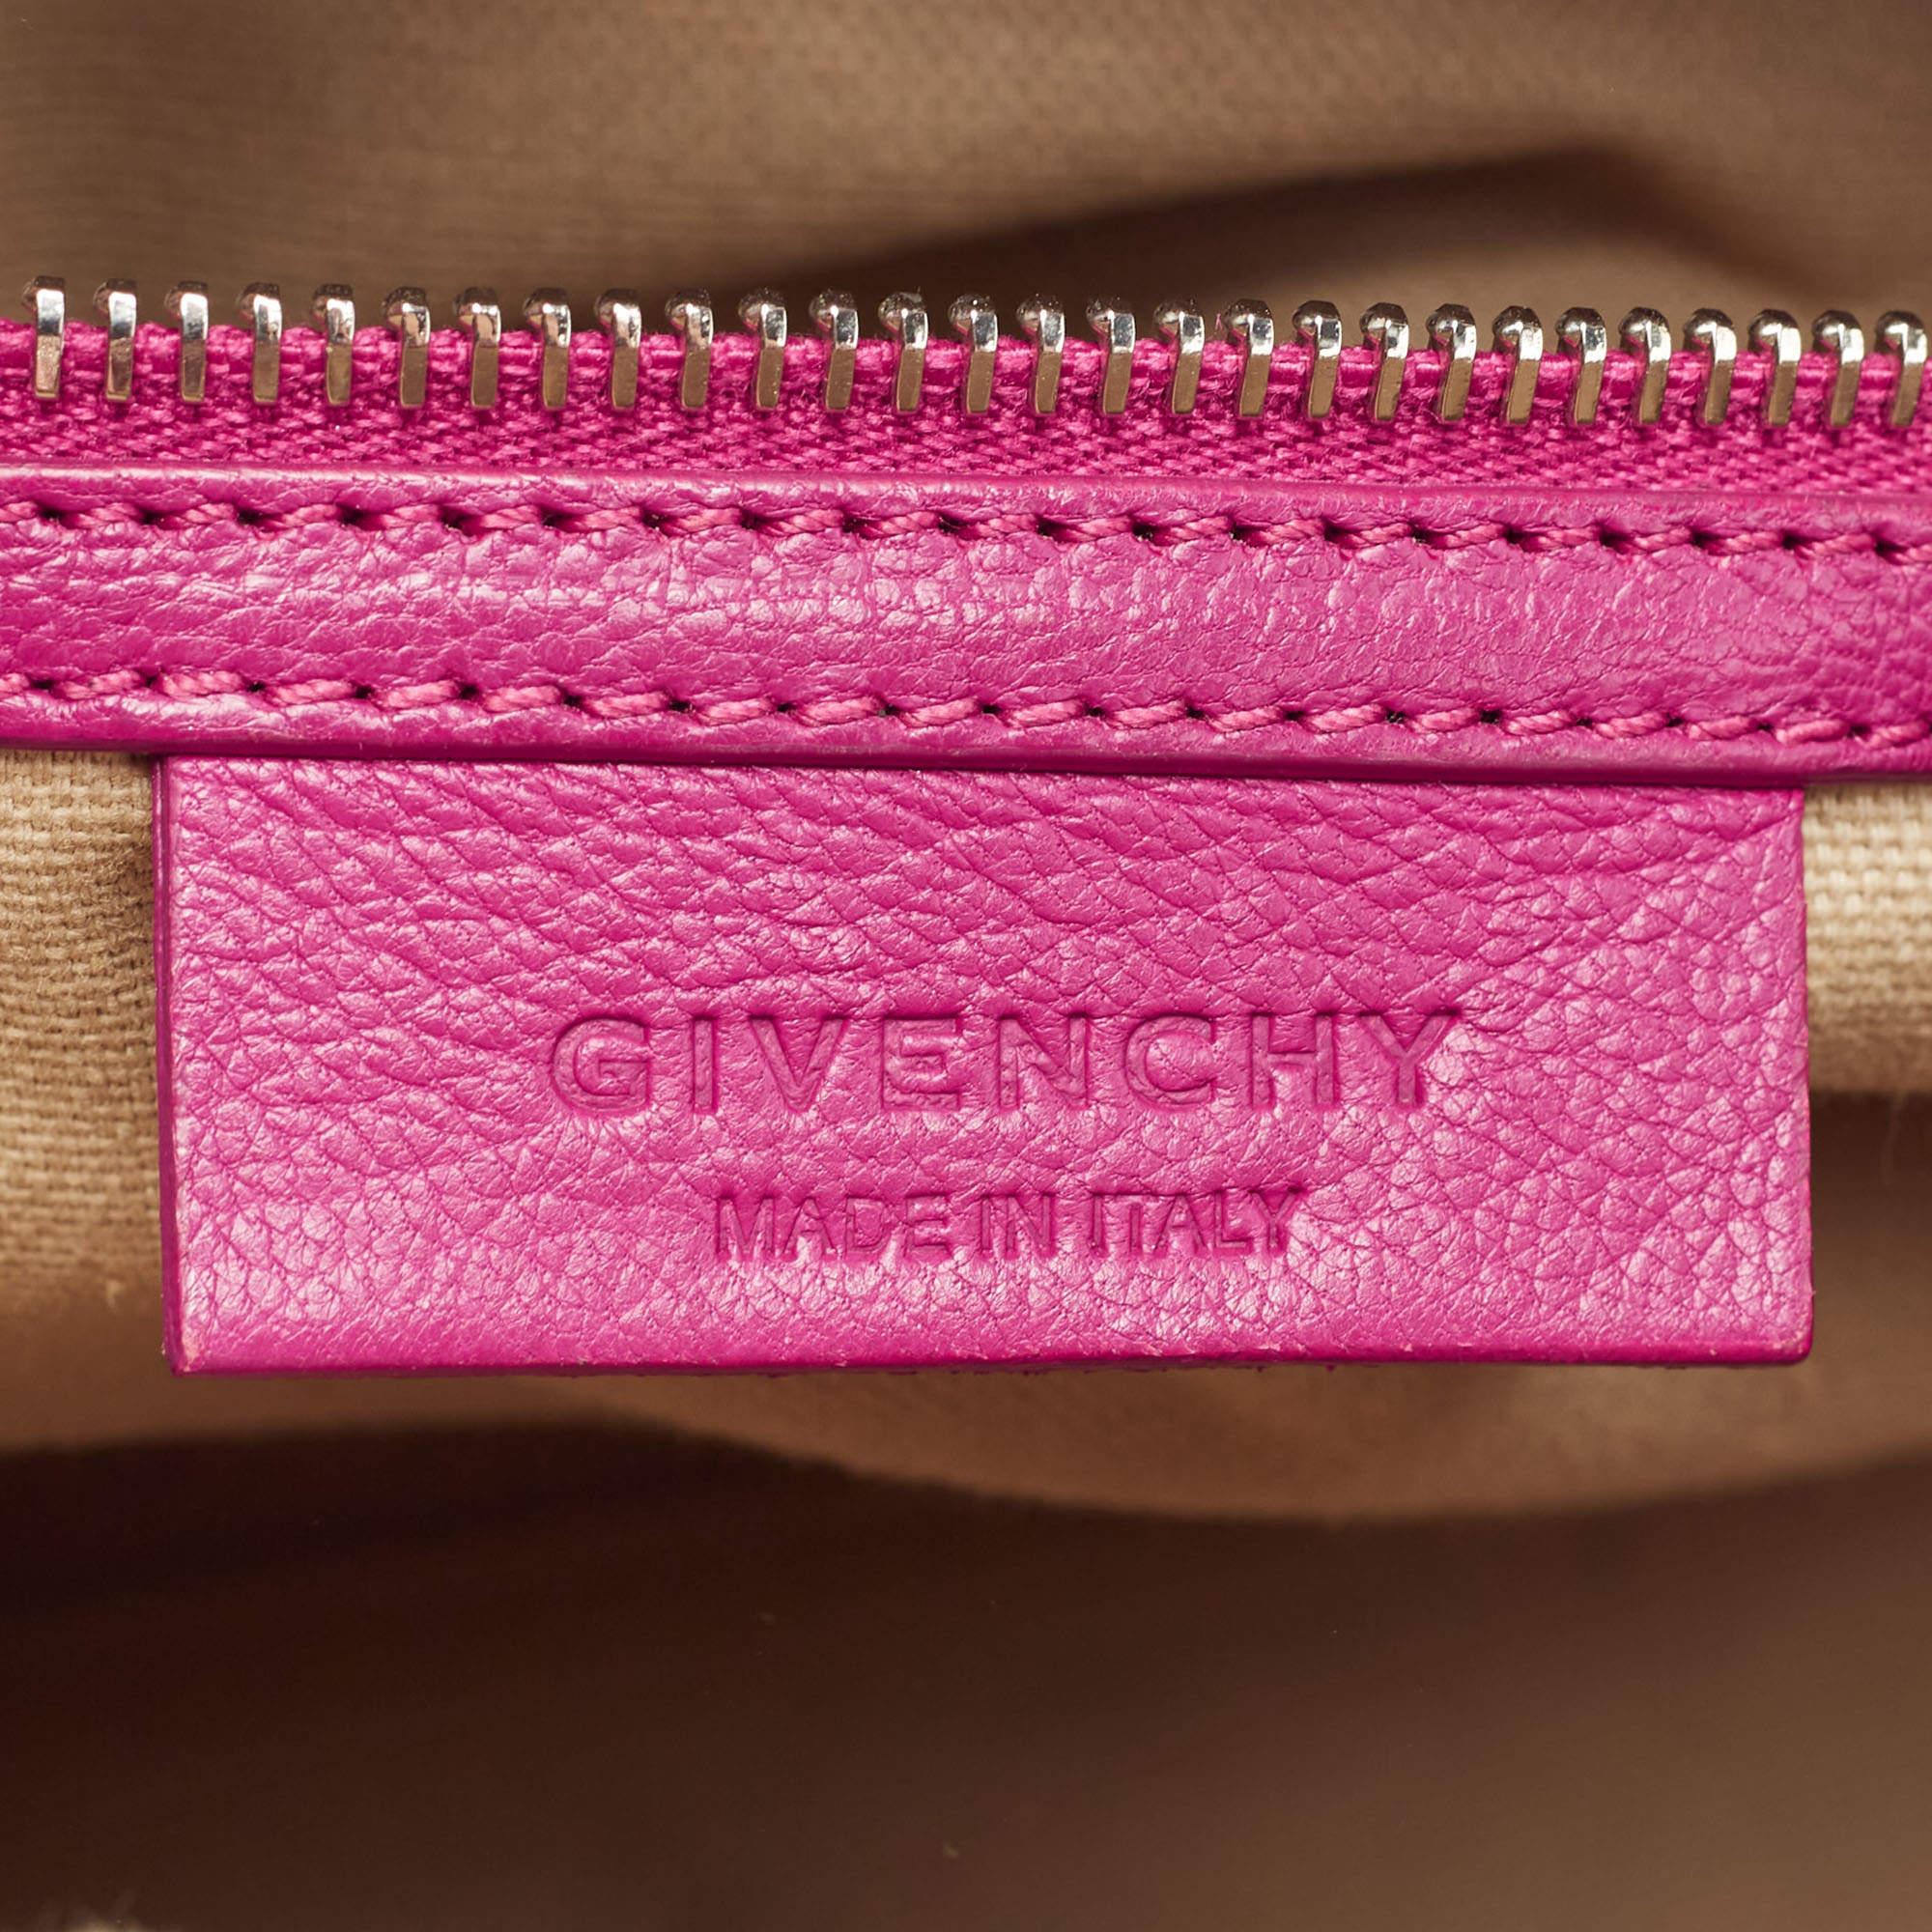 Givenchy Magenta Leather Small Antigona Satchel 9